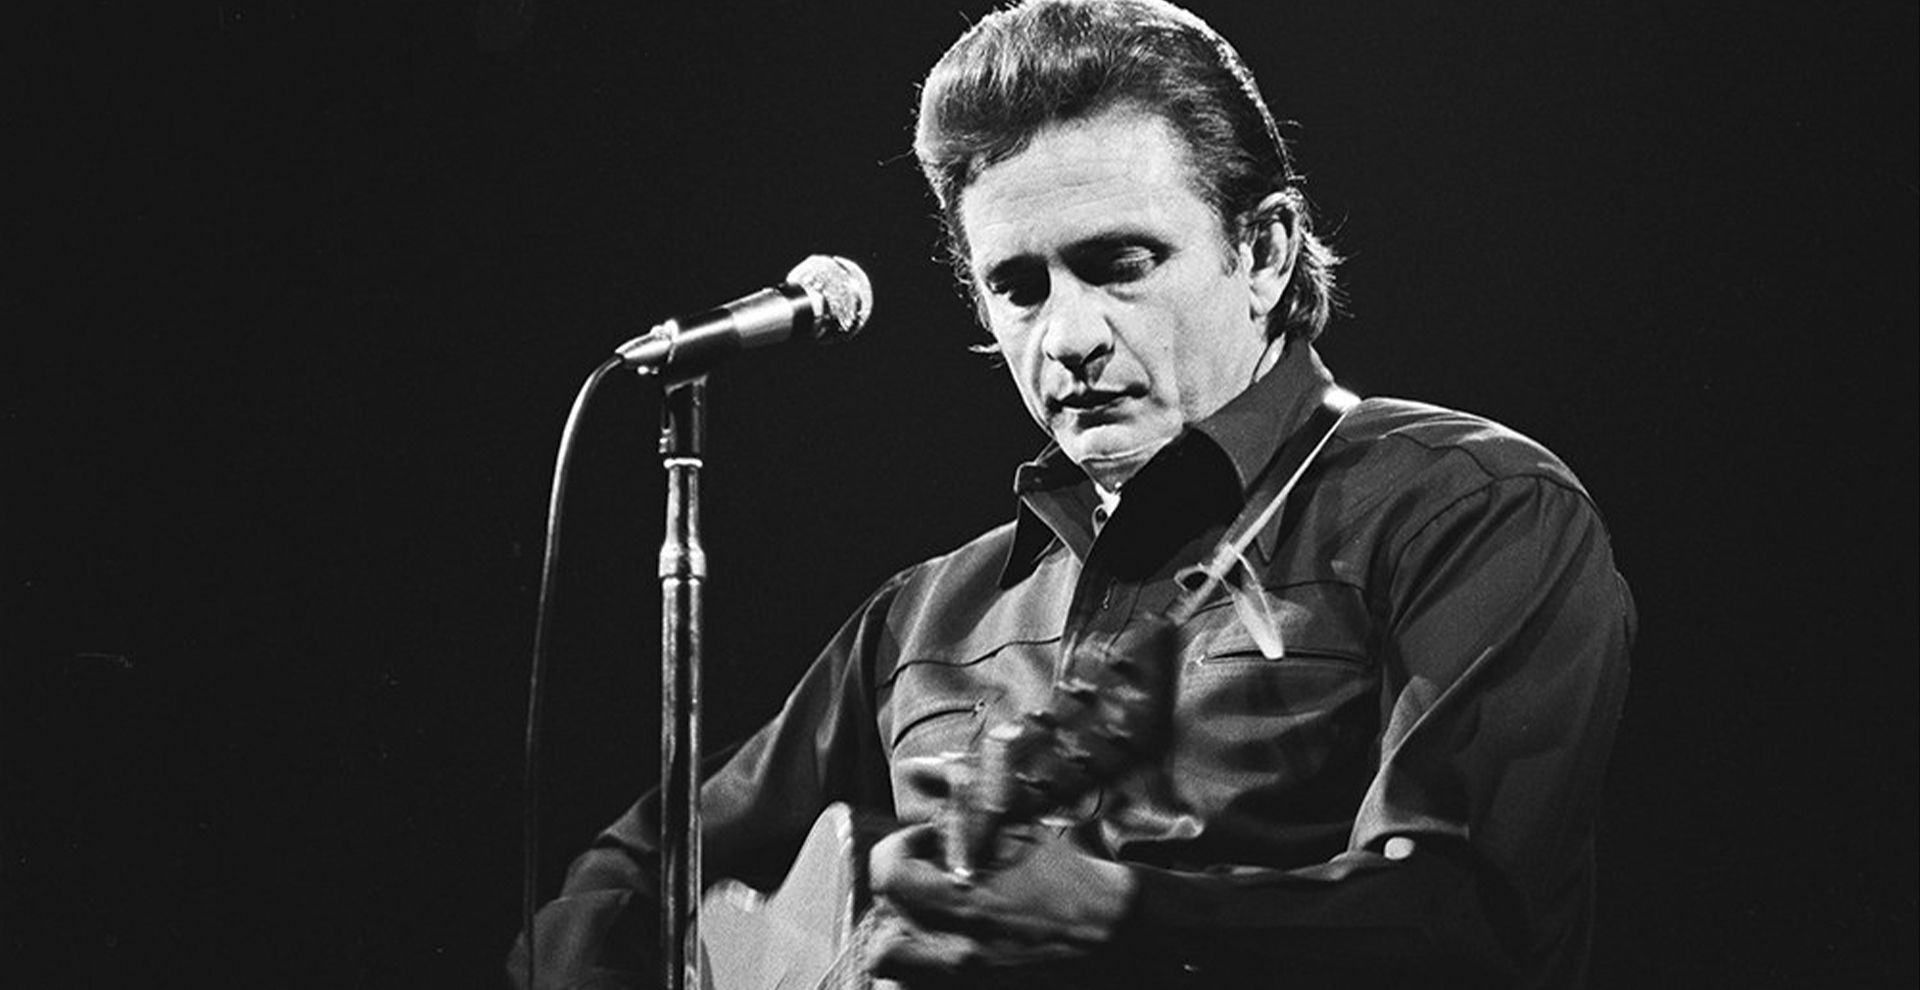 Anuncian nuevo live album de Johnny Cash grabado en 1968